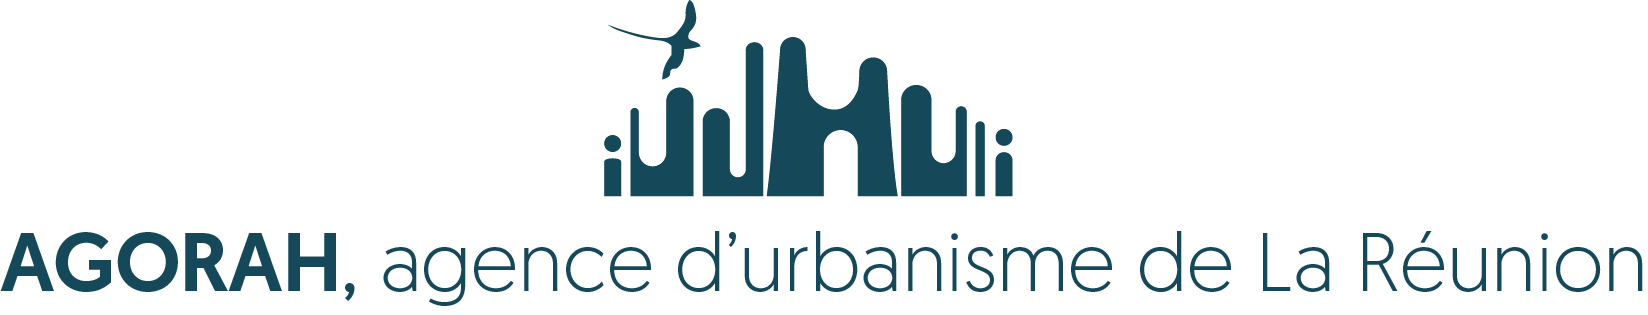 AGORAH  Agence d'urbanisme de La Réunion